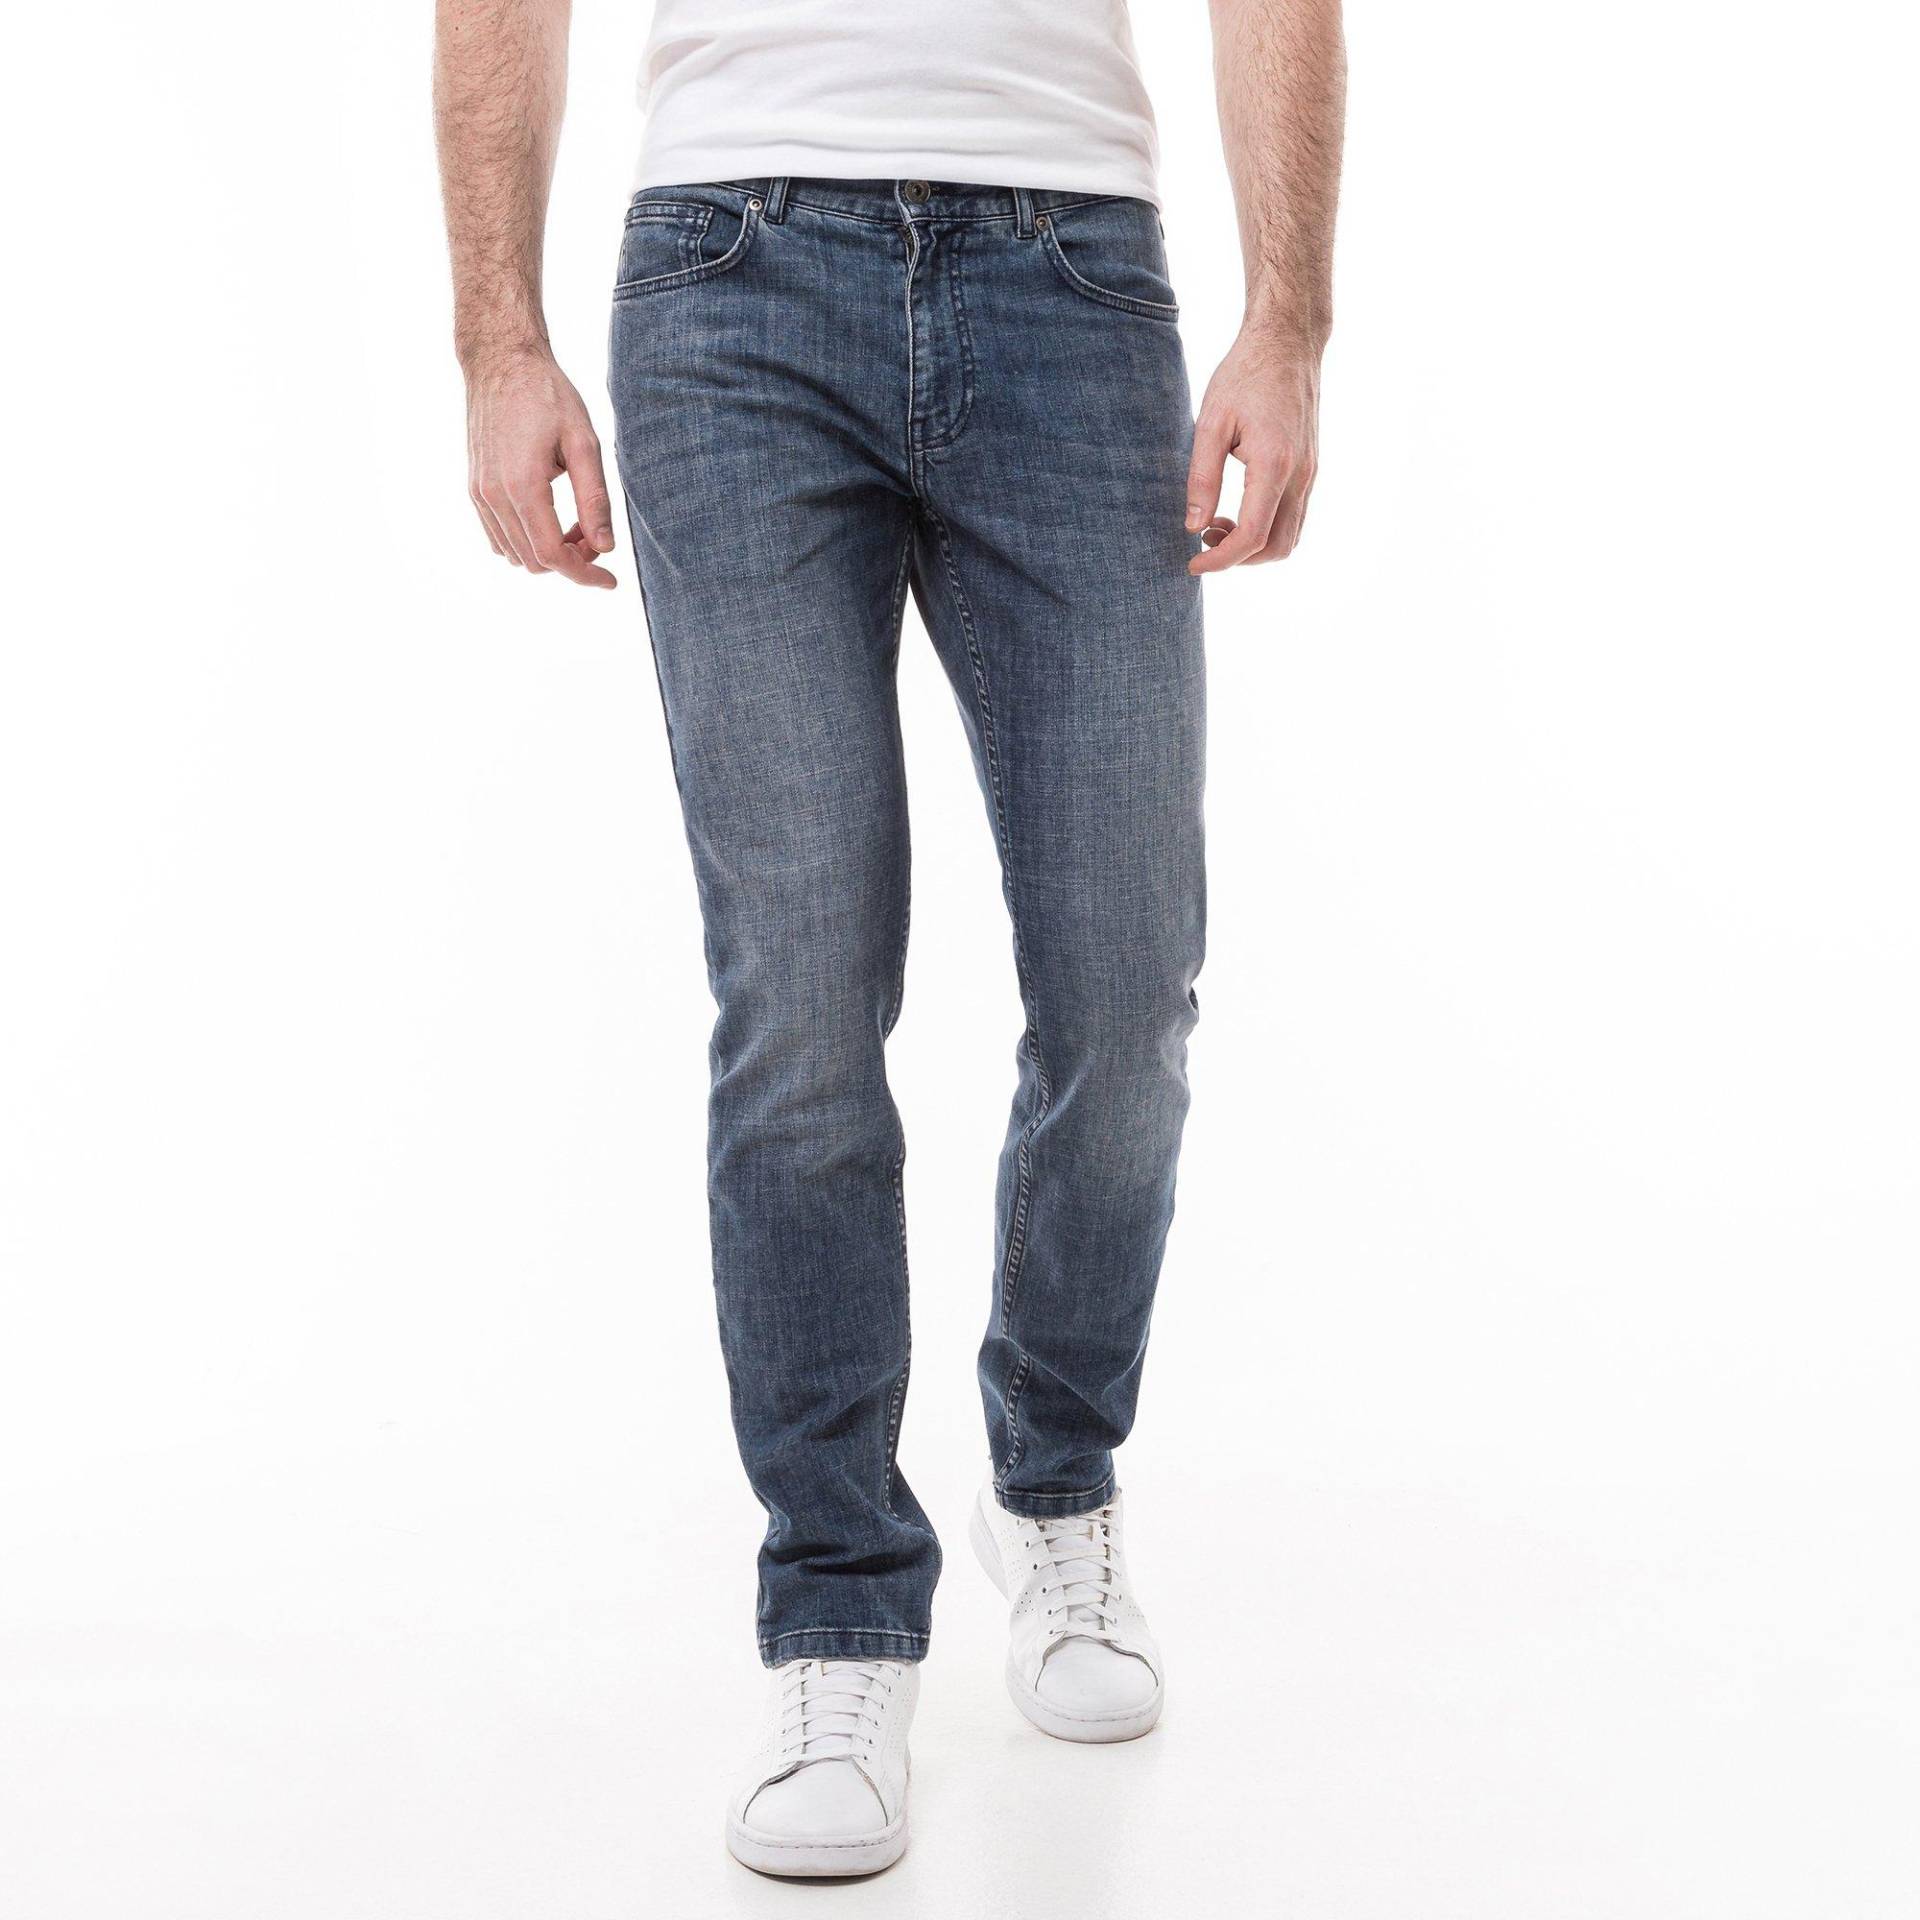 Jeans, Slim Fit Herren Blau Denim L32/W40 von Manor Man